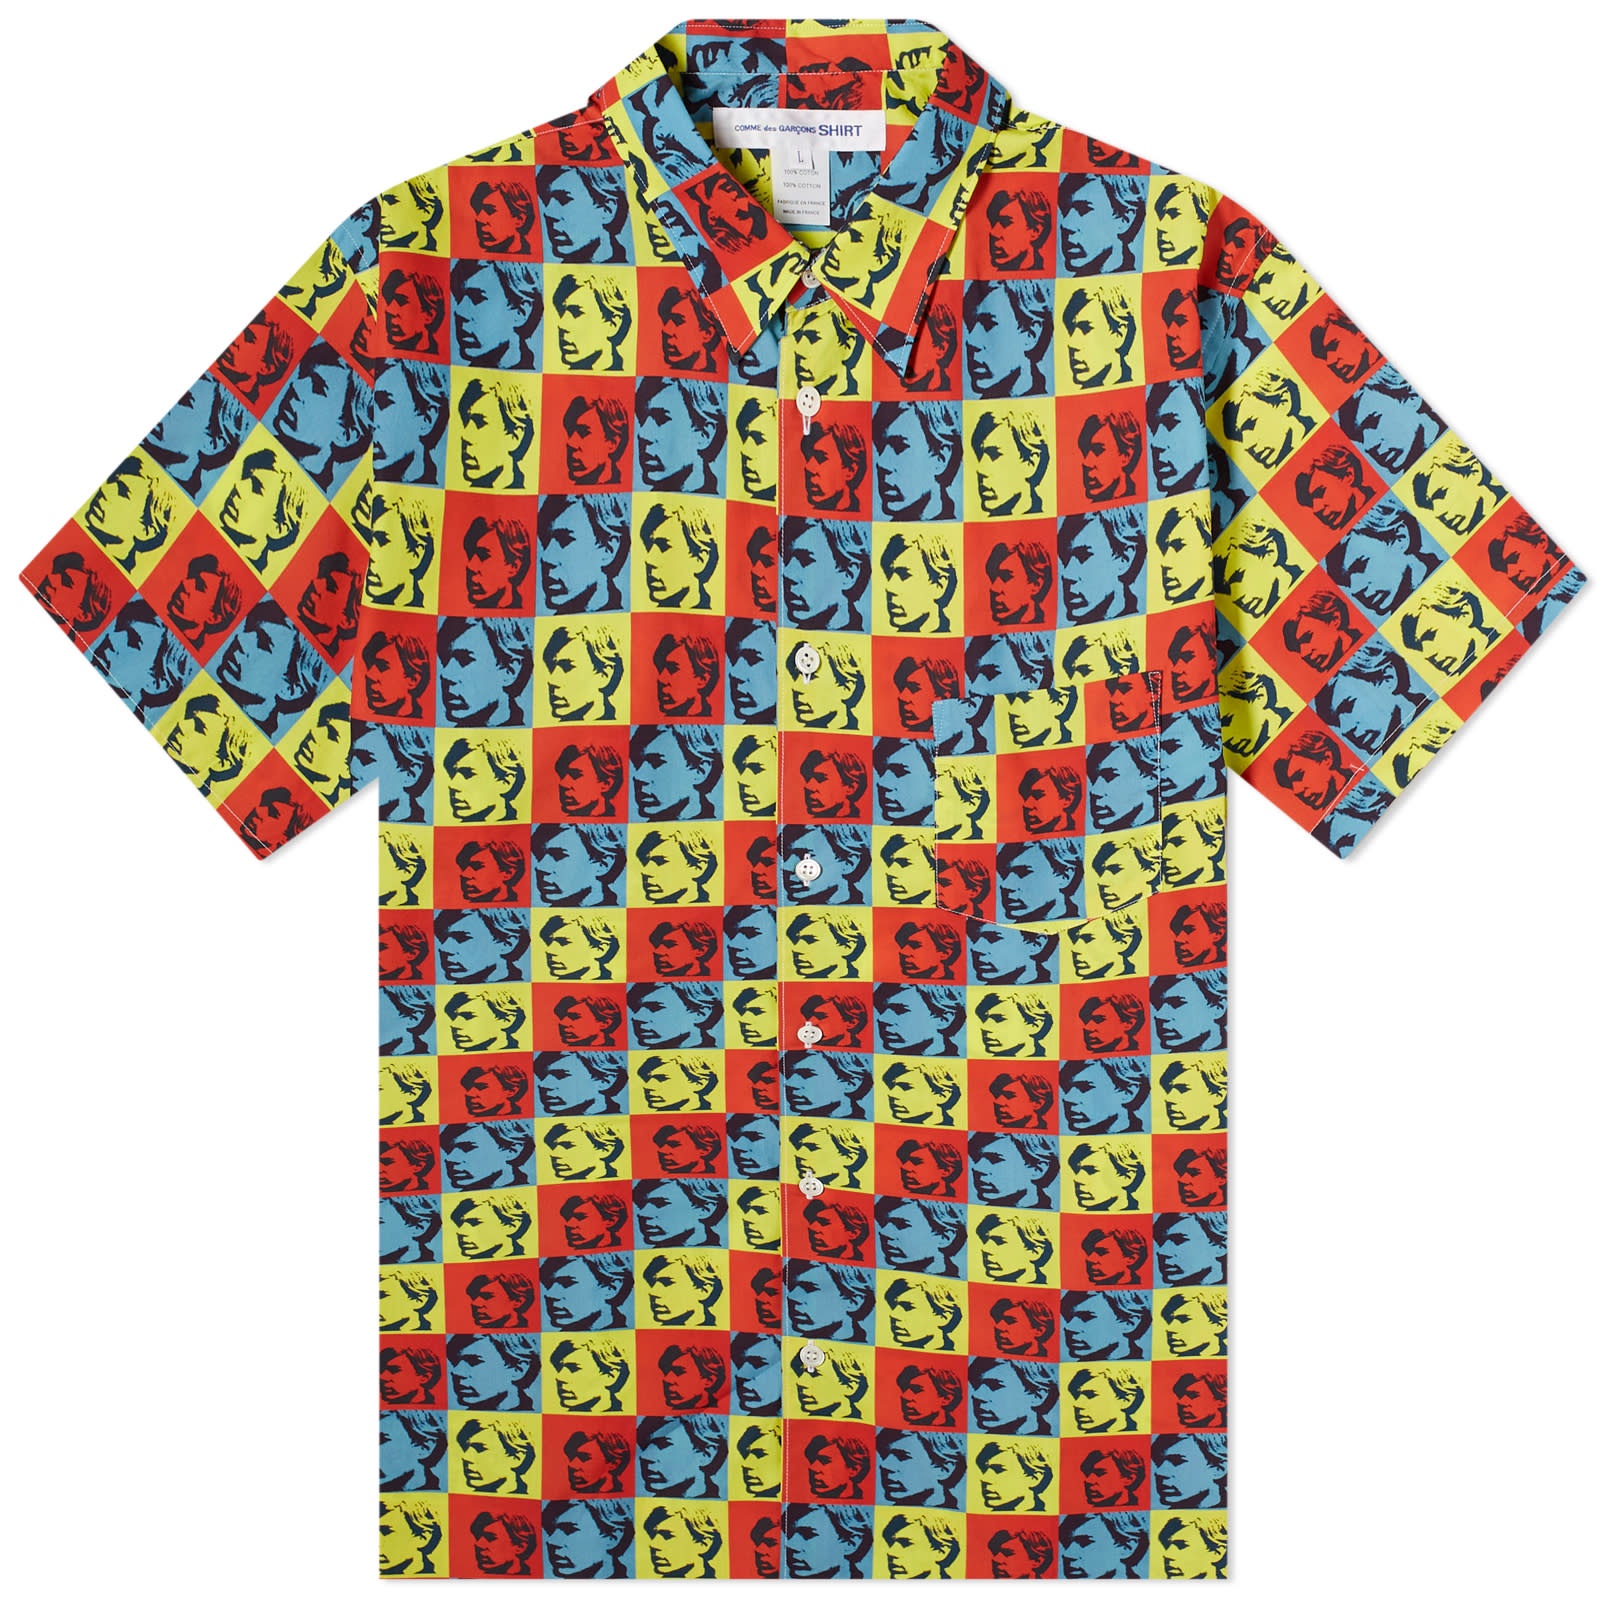 Comme des Garçons SHIRT x Andy Warhol Short Sleeve Shirt - 1